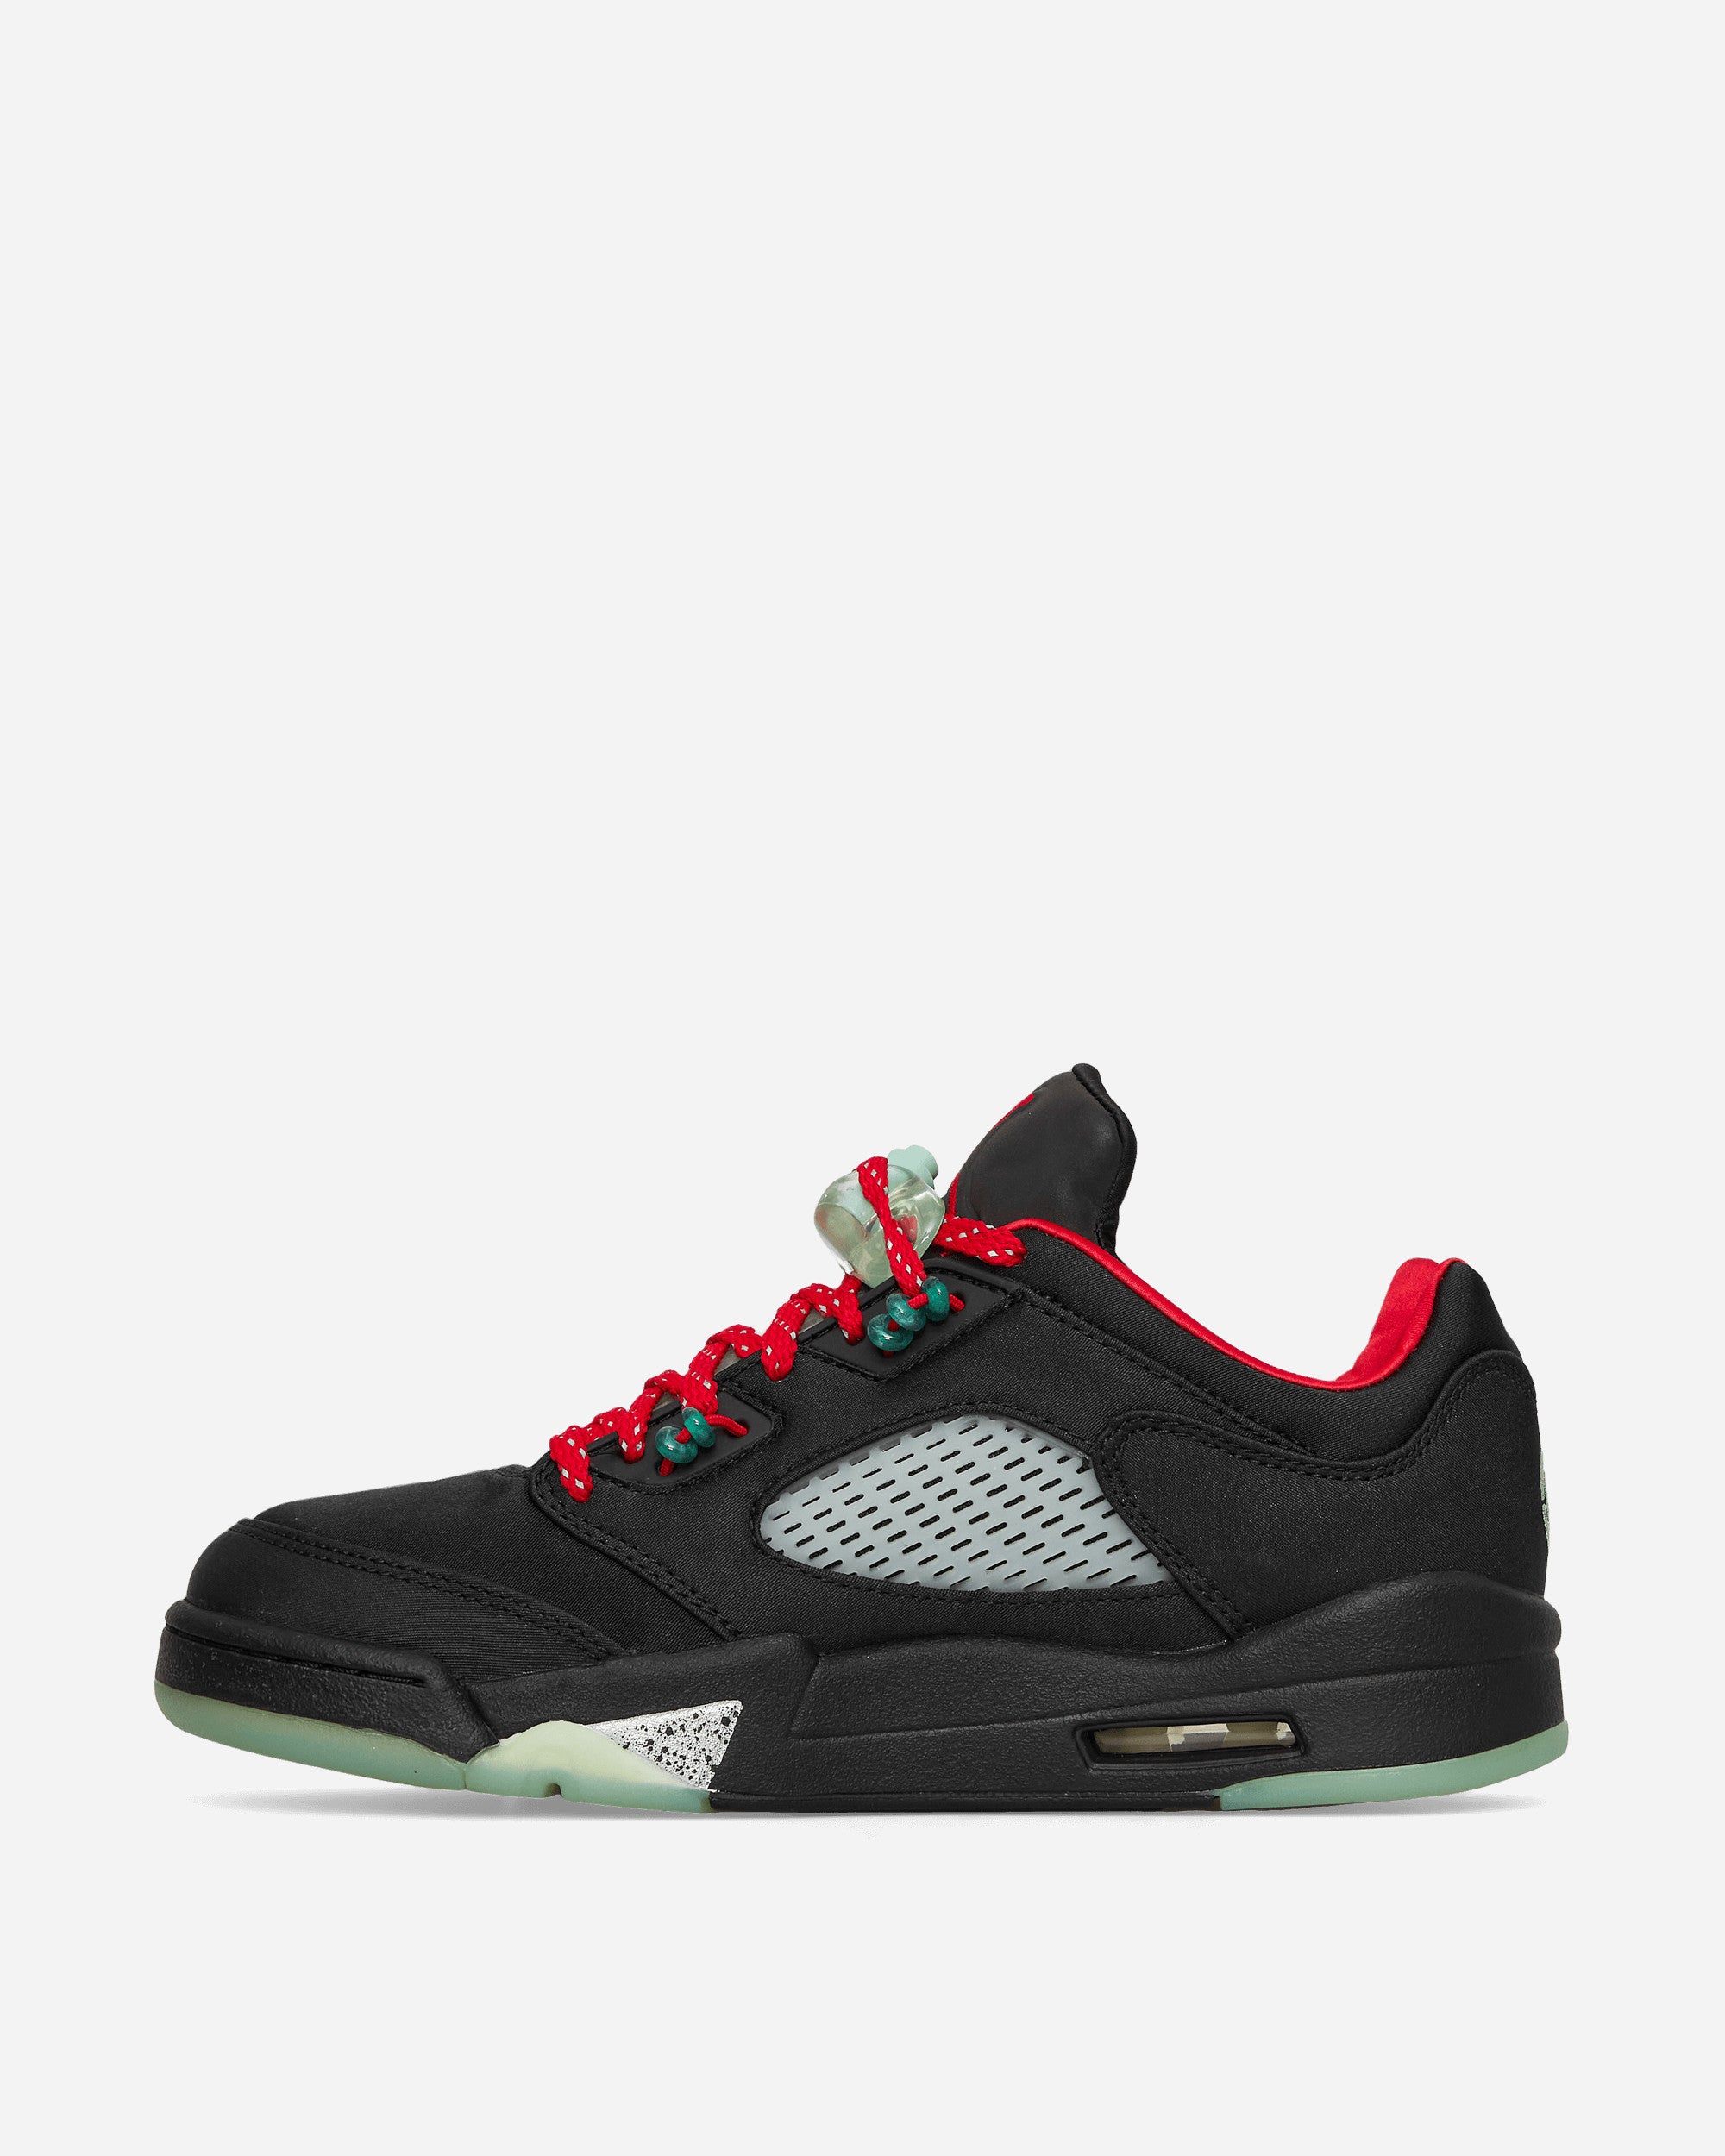 Nike Jordan Air Jordan 5 Retro Low Sp Black/Classic Jade Sneakers Low DM4640-036